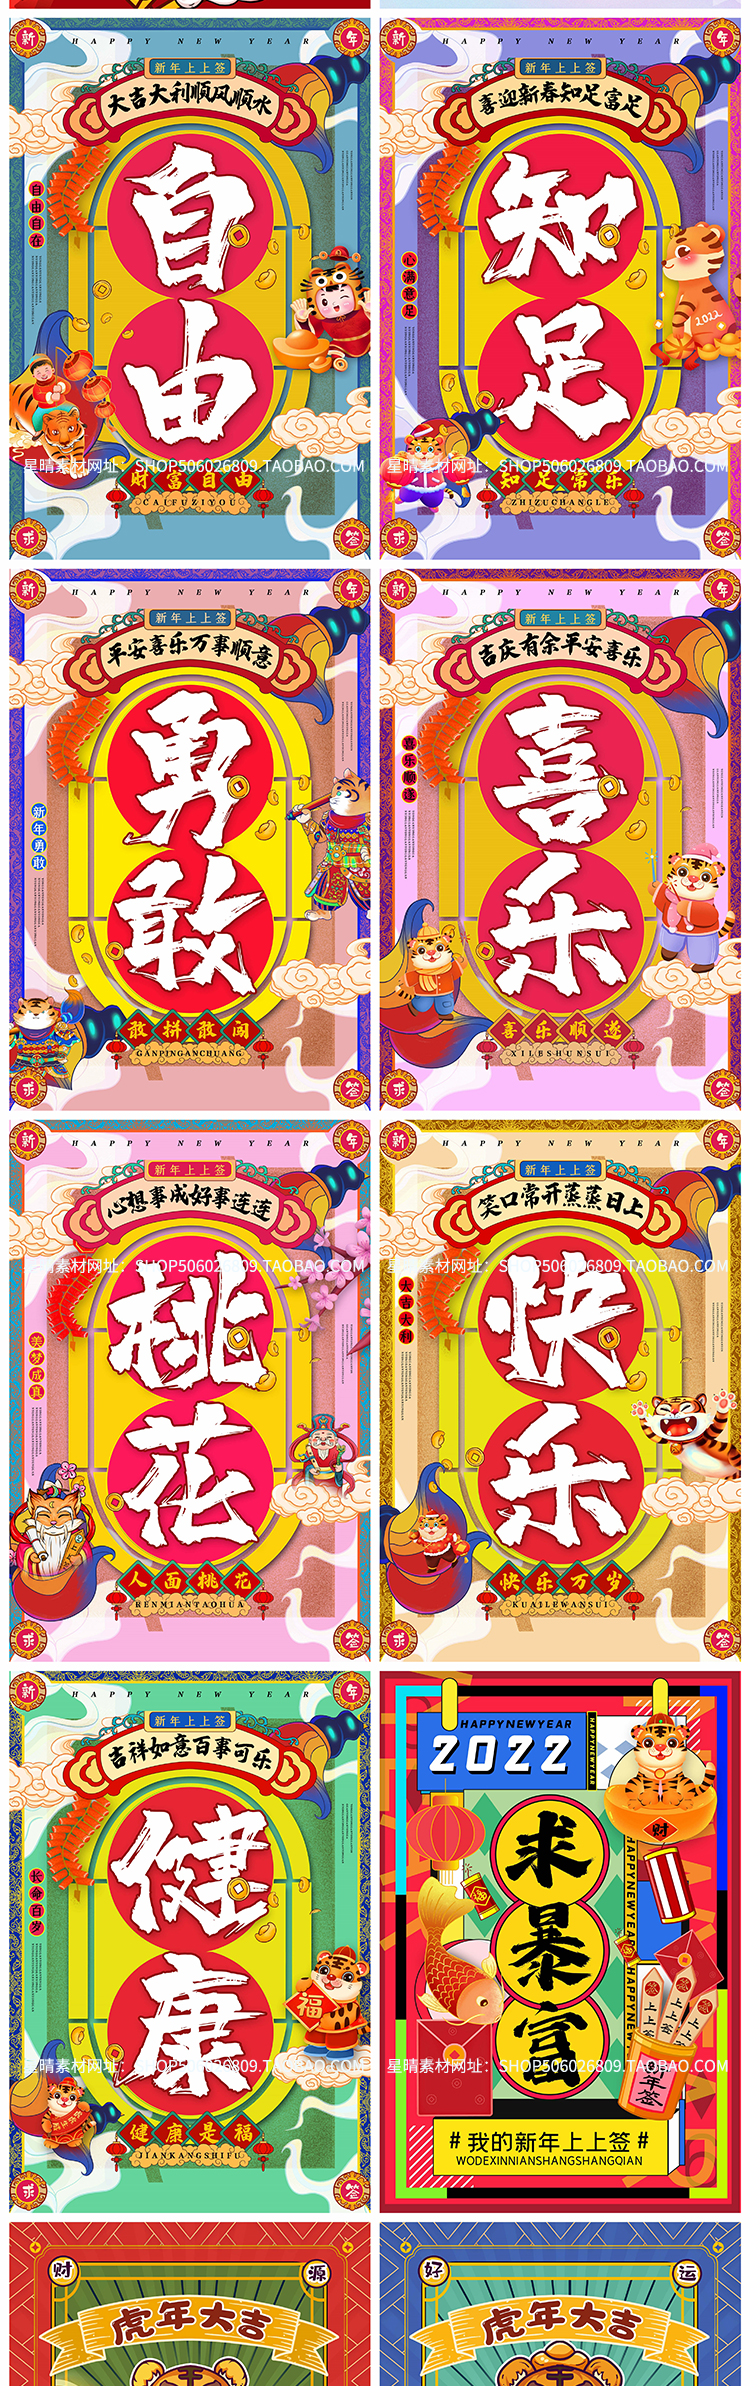 2022虎年春节卡通新年好运祝福语psd设计素材插图2